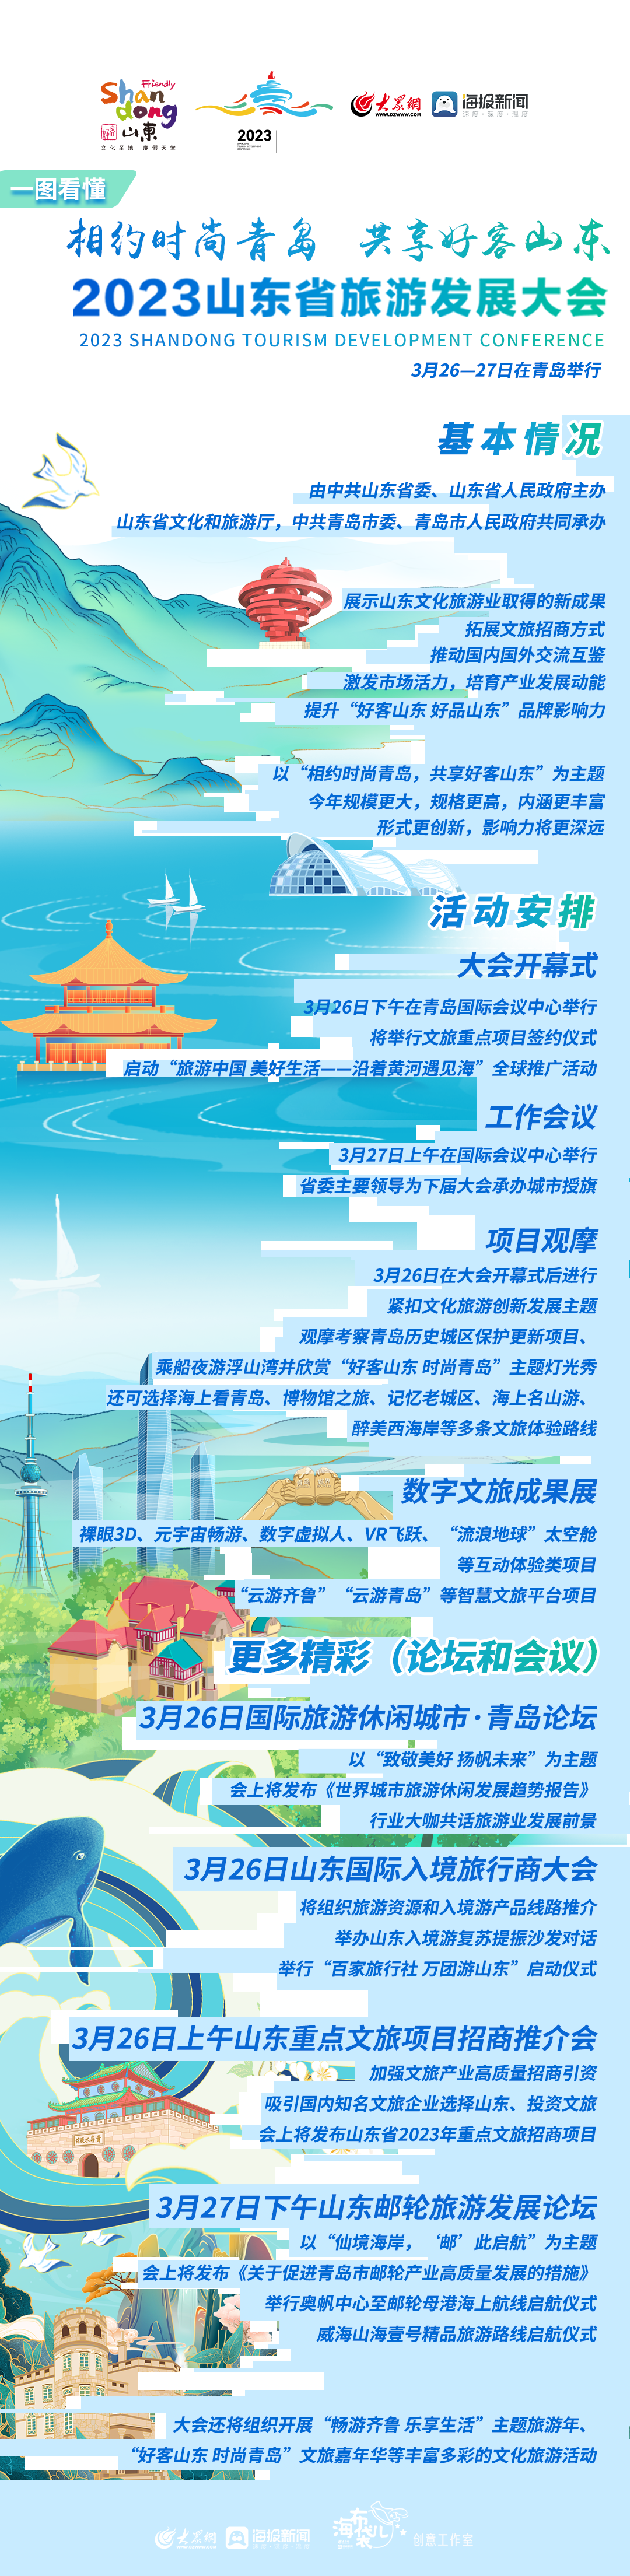 2023山东省旅游发展大会定于3月26-27日在青岛举行